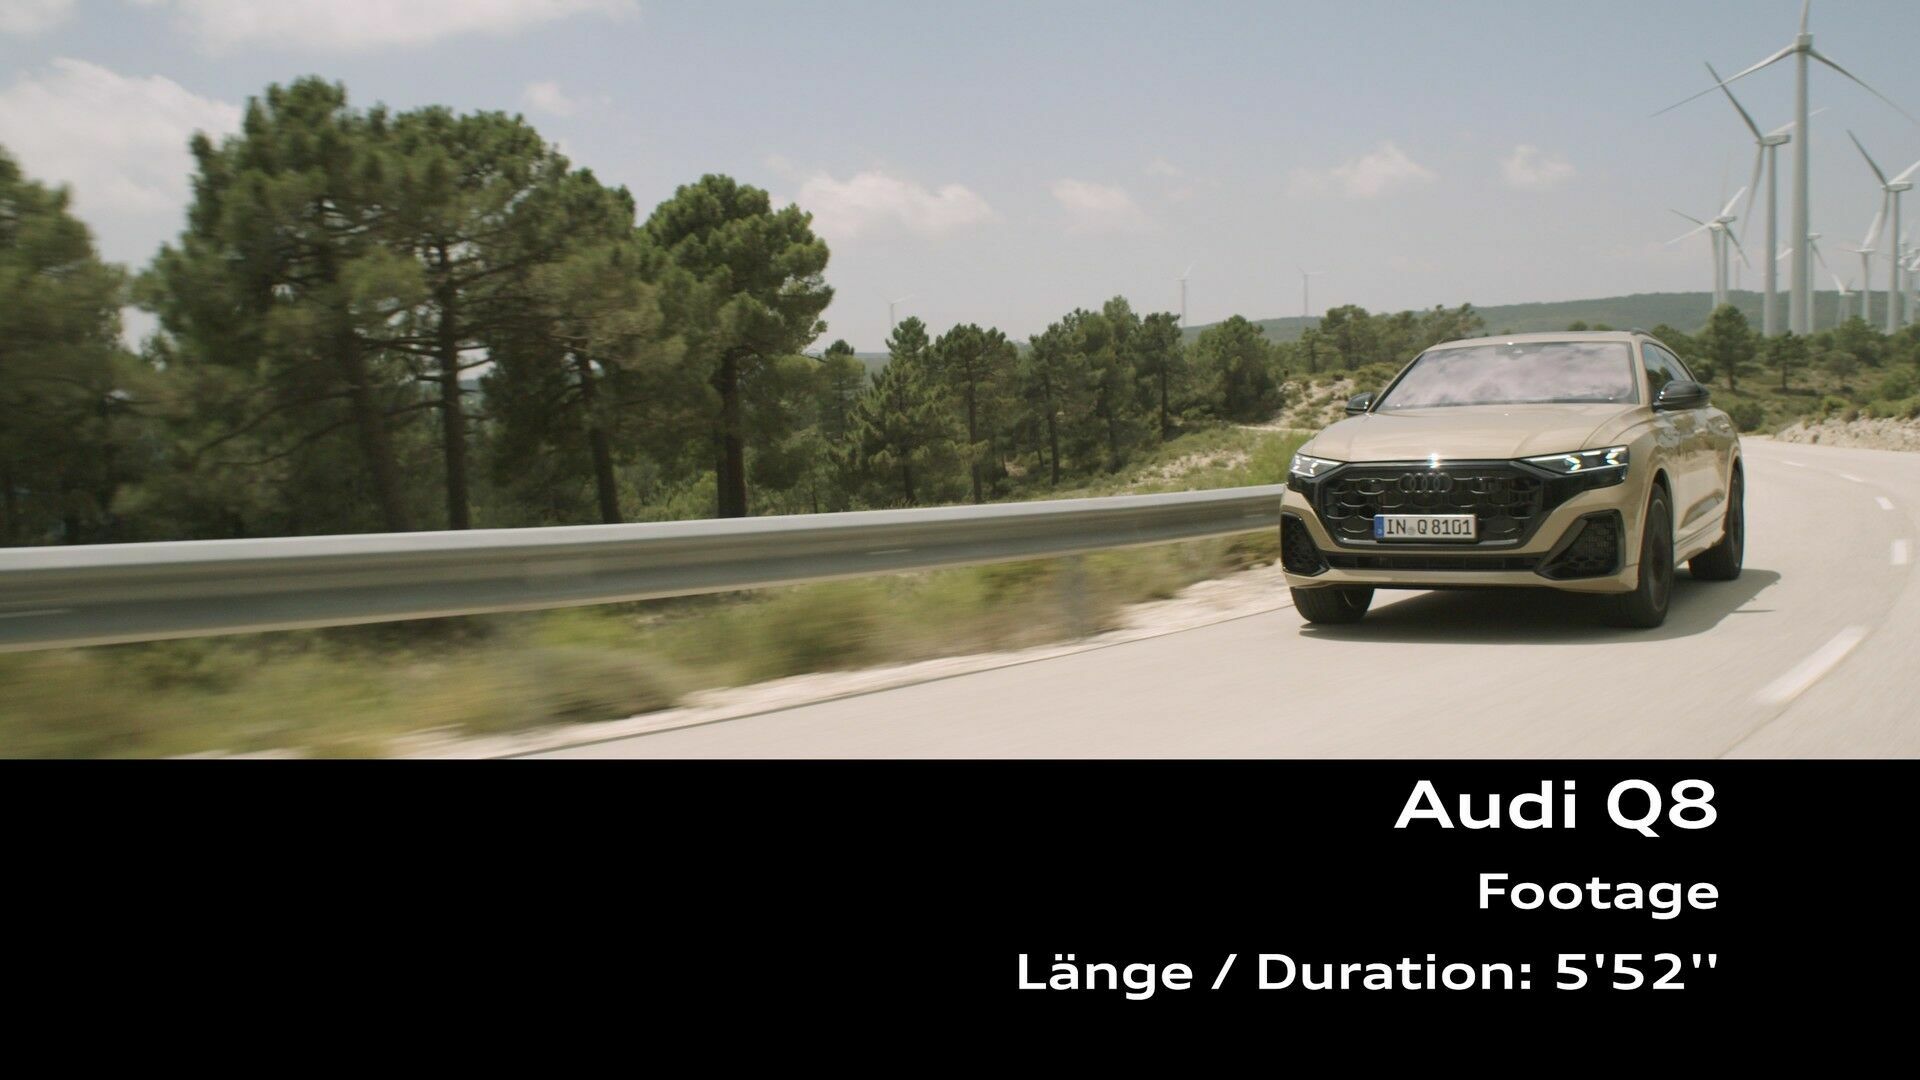 Footage: Audi Q8 (dynamic)